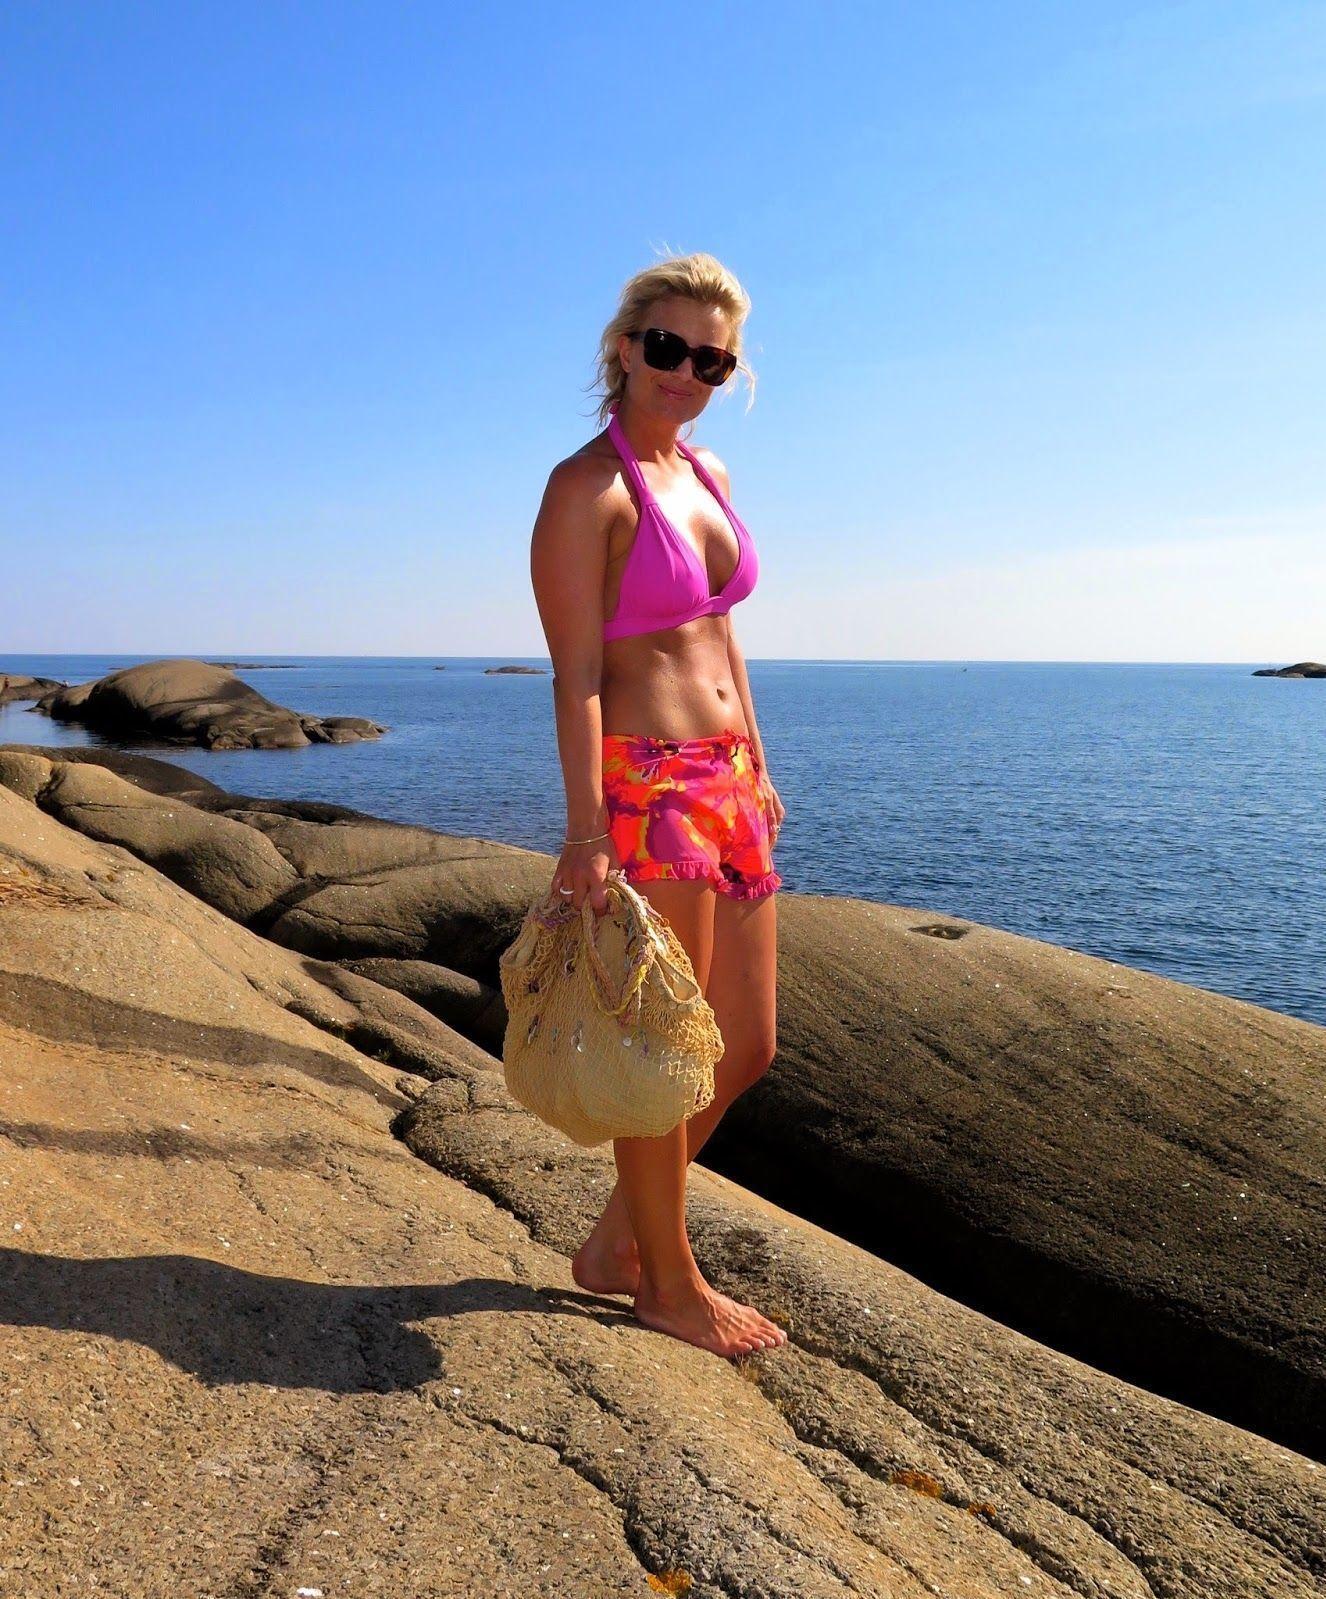 FAVORITT: Stylist Hedda Skoug er veldig glad i bikinier med mønster, men favoritten er dyp rosa. Foto: Privat